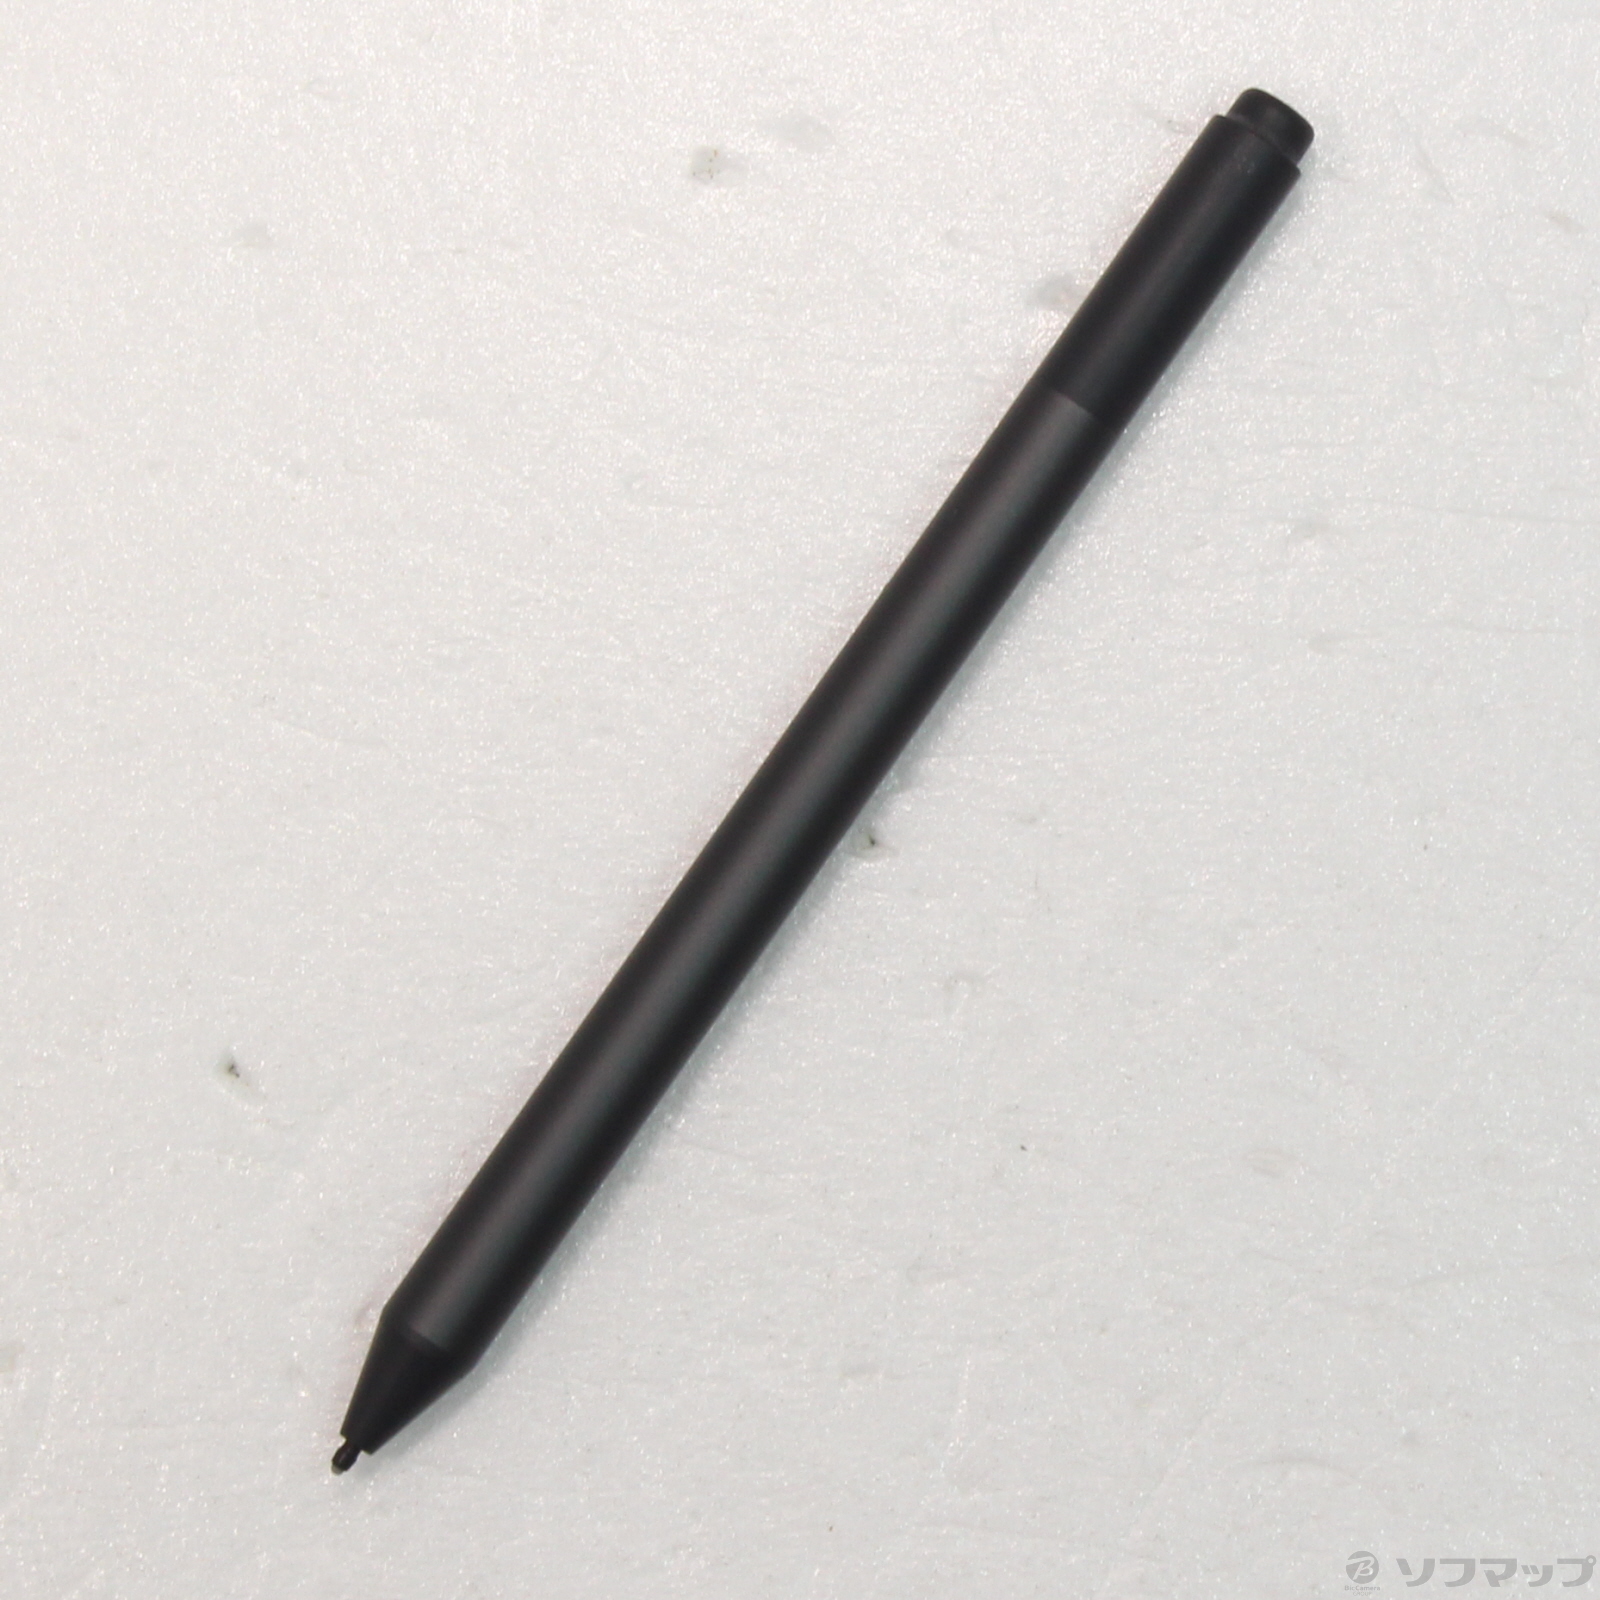 〔展示品〕 Surface Pen EYU-00007 ブラック